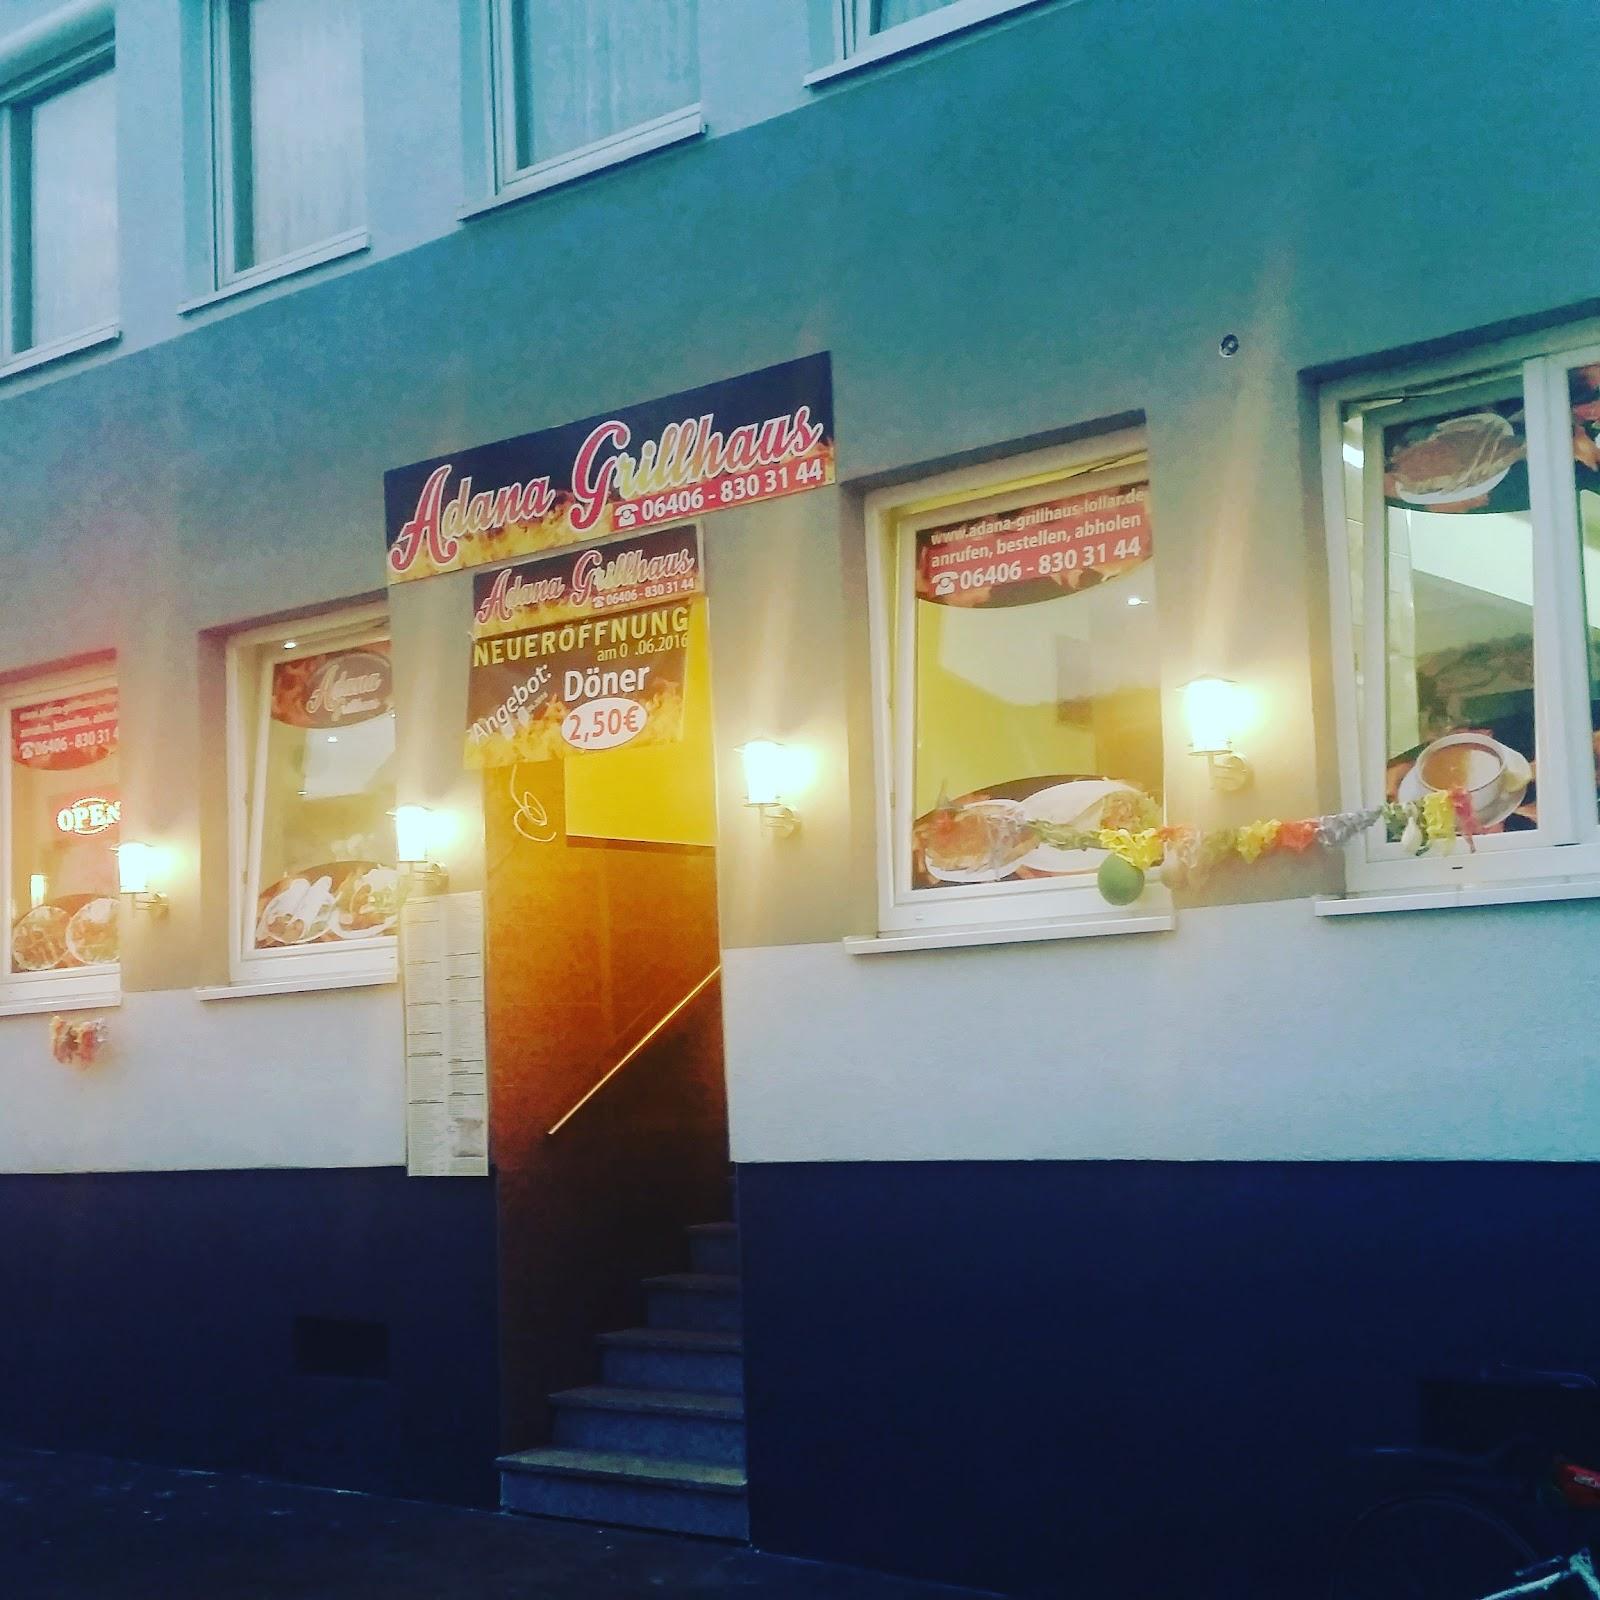 Restaurant "Adana Grillhaus" in  Lollar